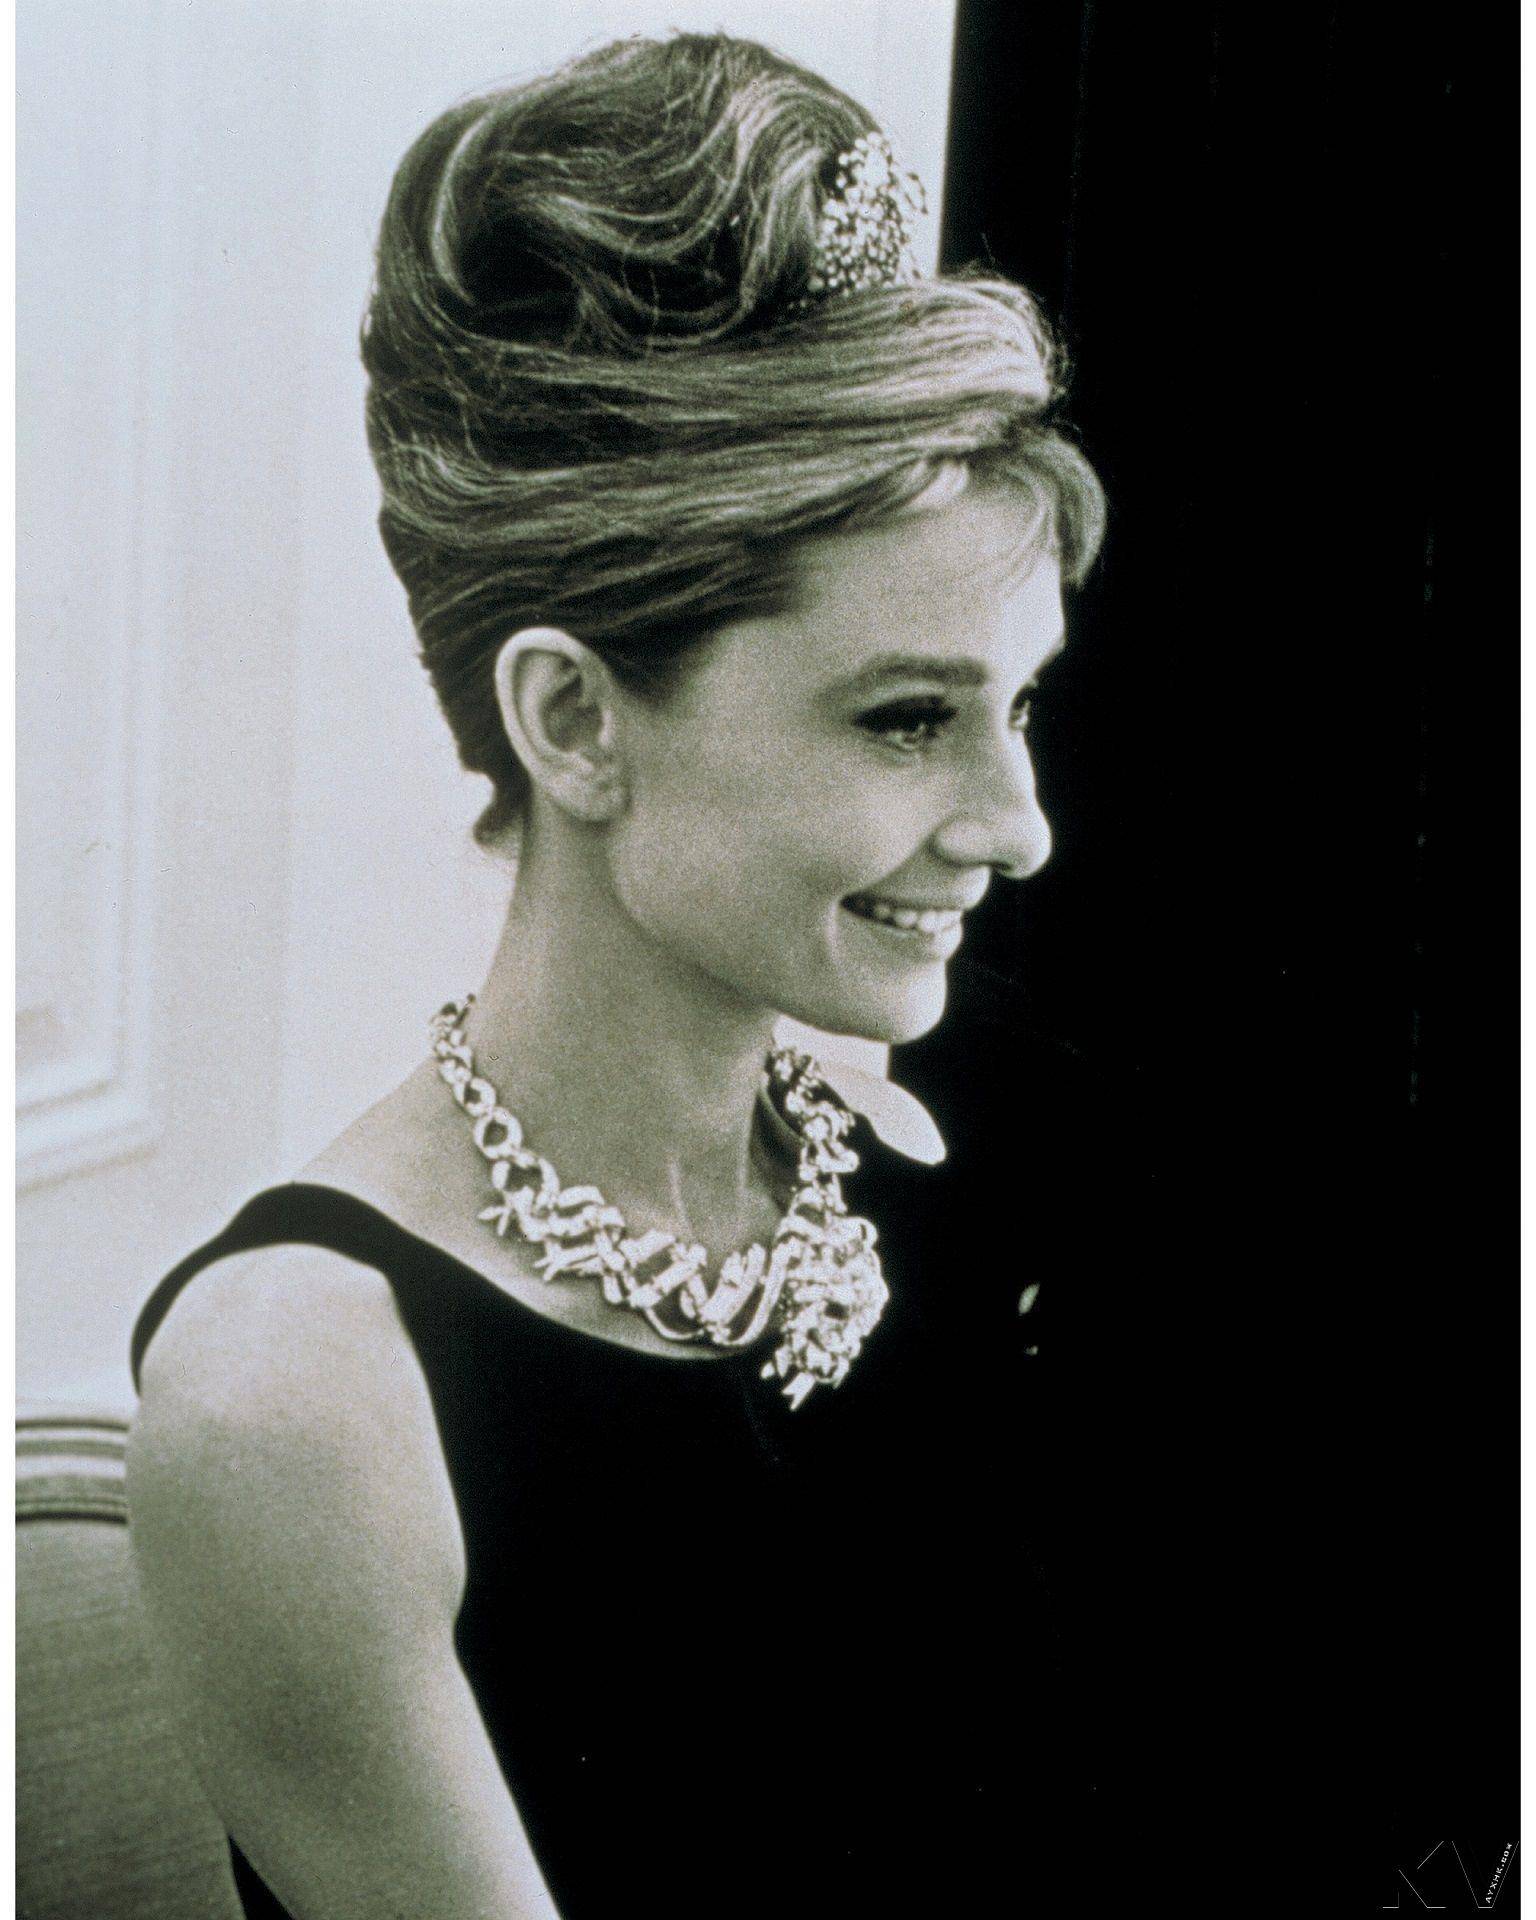 奥黛丽赫本戴过的Tiffany名钻5度变身　小鸟环绕拱128克拉黄钻 奢侈品牌 图2张